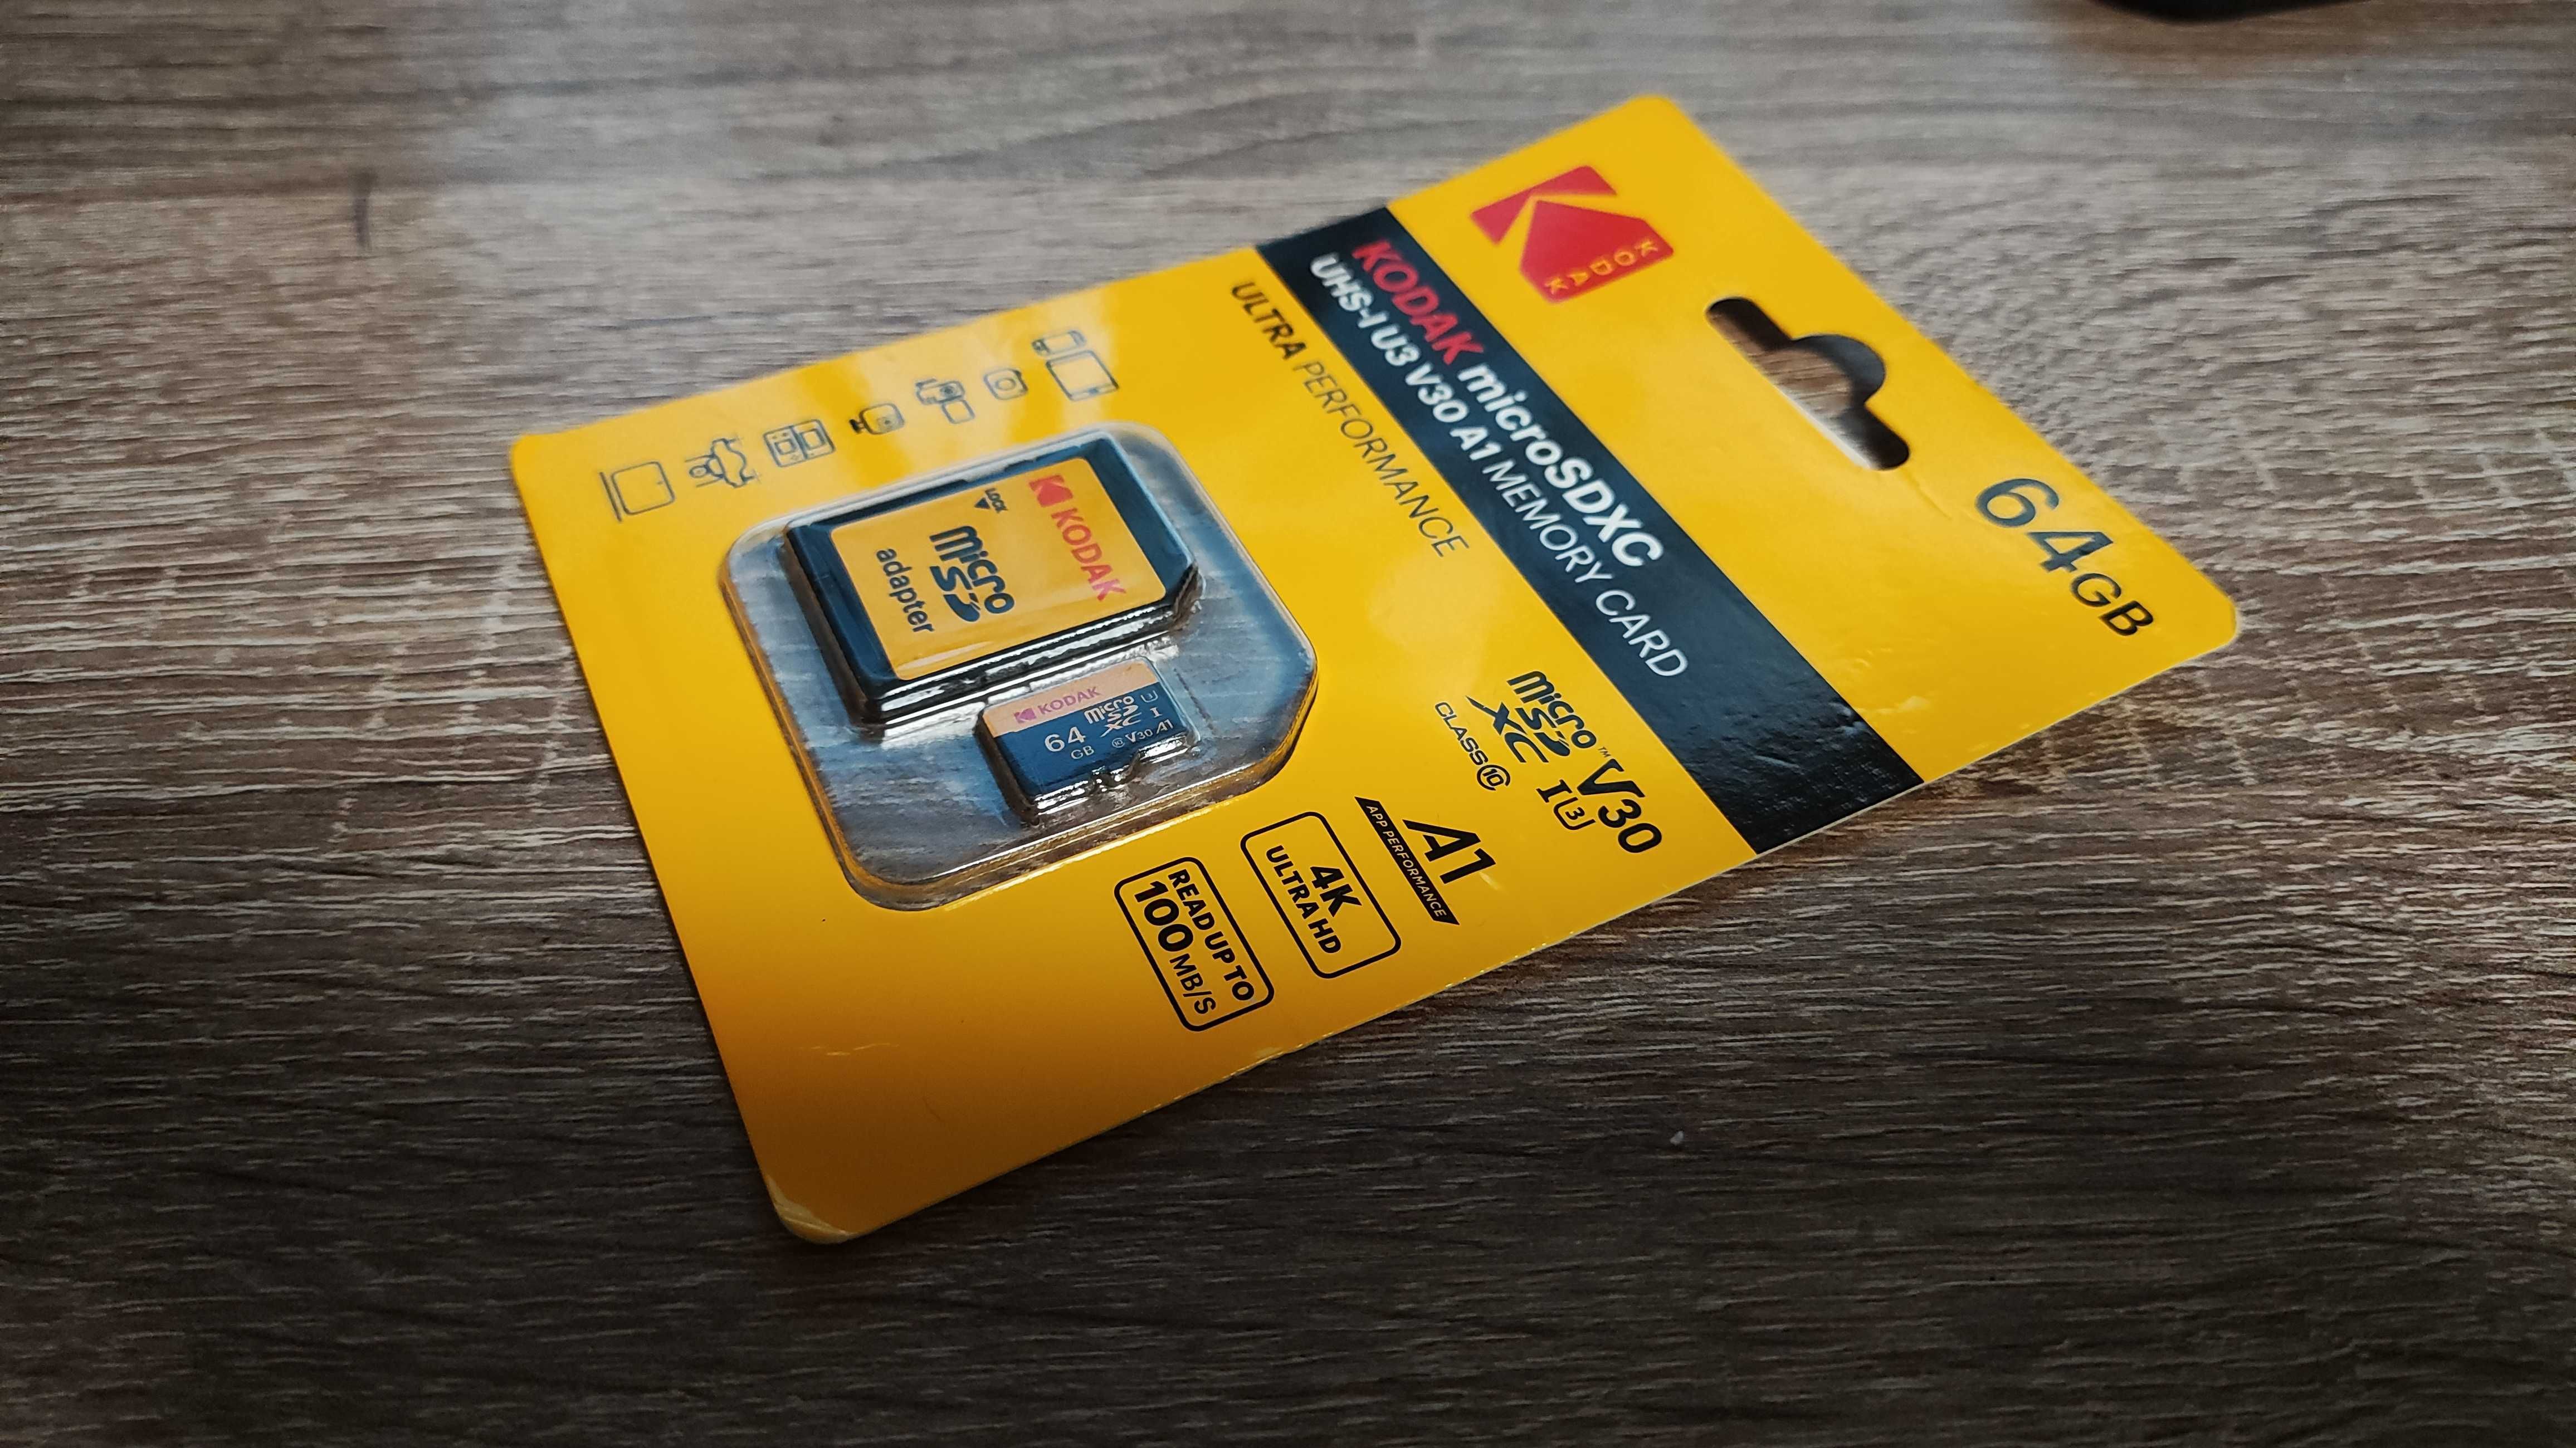 Карта пам'яті Kodak 64 GB MicroSD UHS-I U3 V30 A1 Class 10